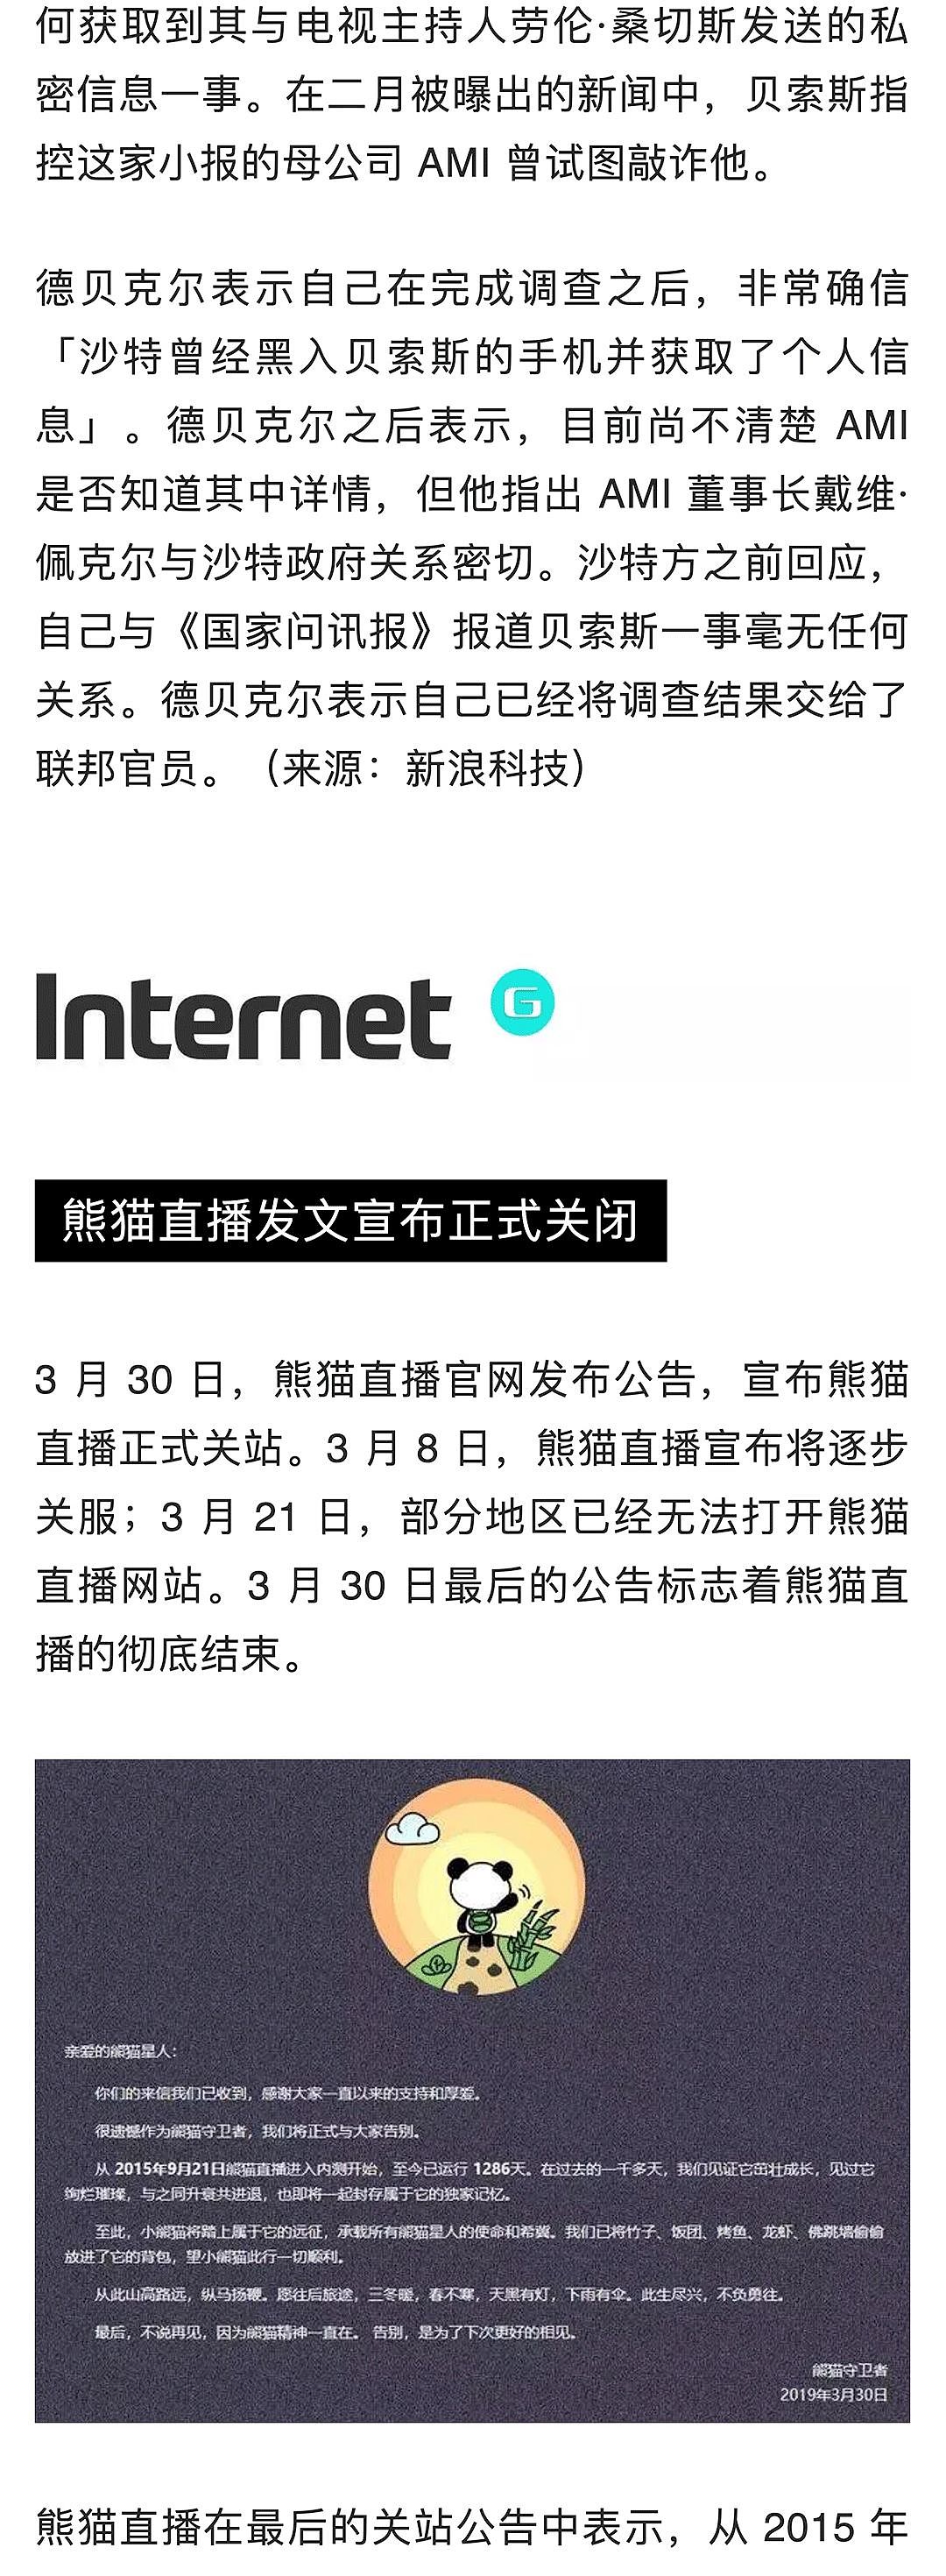 苹果中国全线降价约 3%；熊猫直播宣布正式关闭；苹果挖角特斯拉工程副总裁 | 极客早知道 - 3